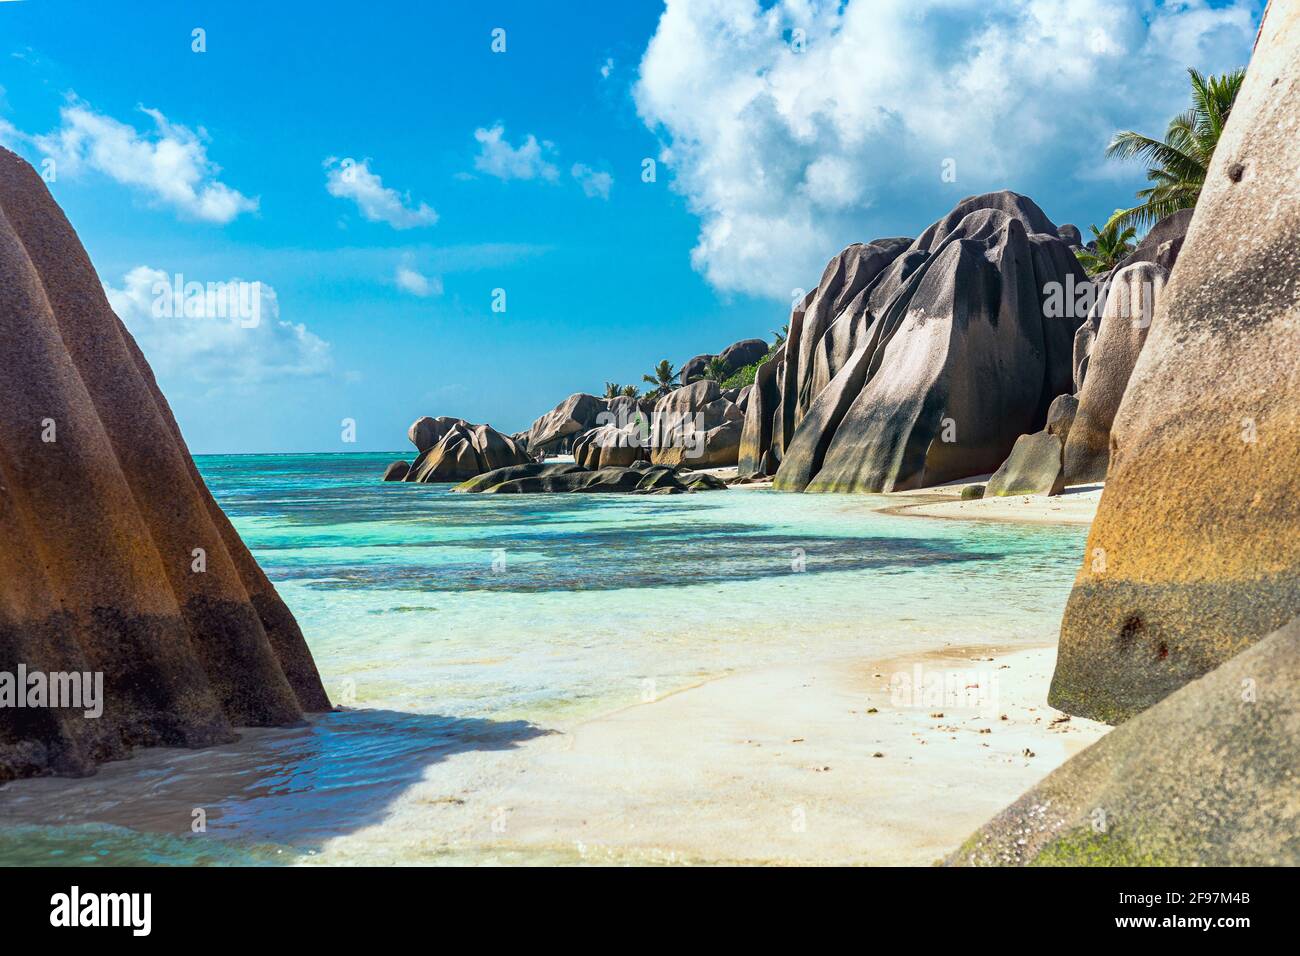 Scène typique aux Seychelles: Eau turquoise, sable blanc, palmiers - tout ressemble à un rêve Banque D'Images